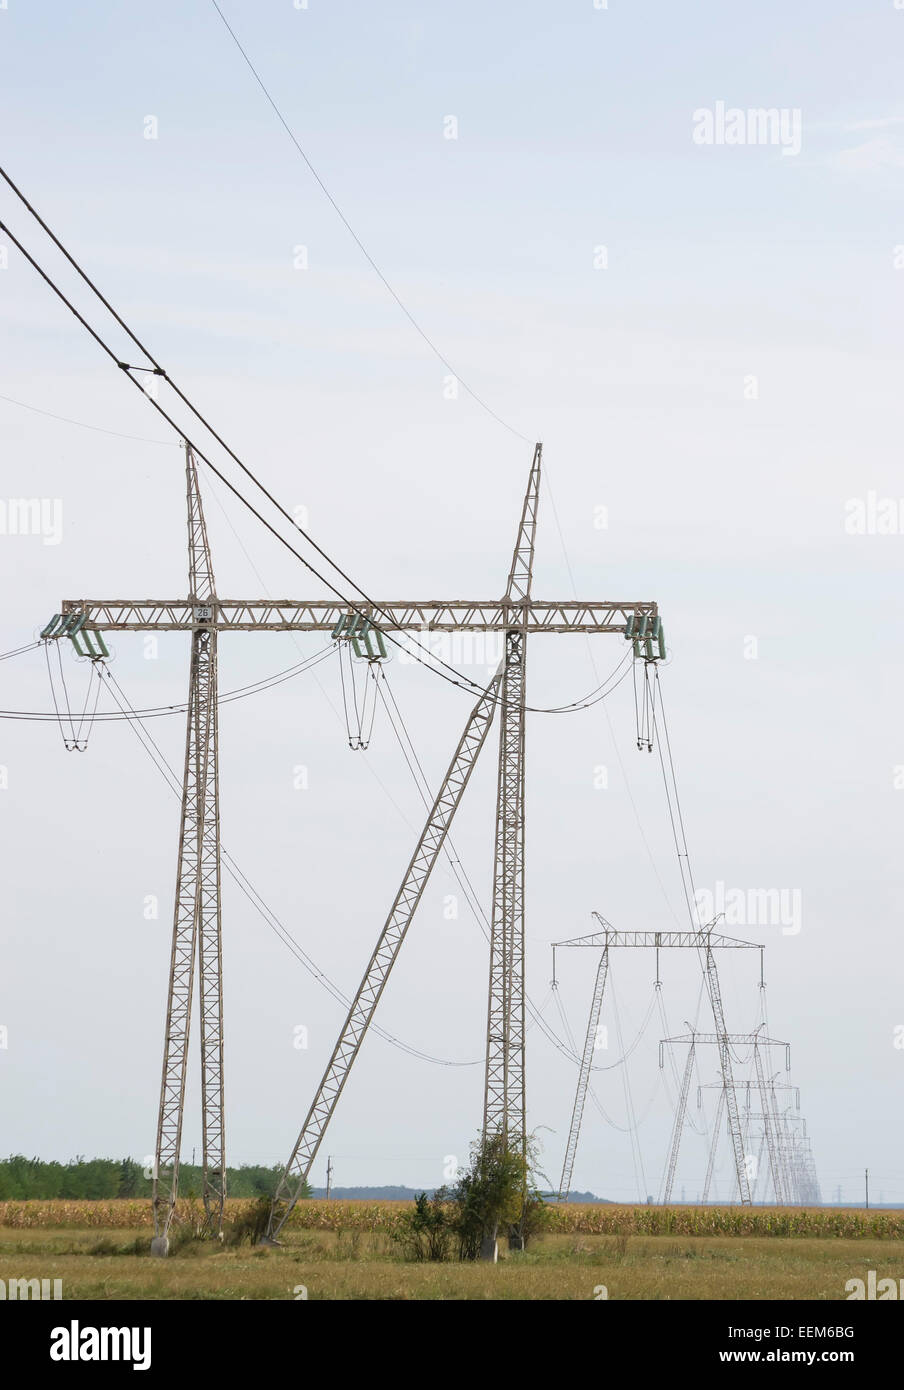 Industrielandschaft mit flächendeckenden Netzwerk von Hochspannungsleitungen für Energieverteilung, Sicht-Seitenansicht Stockfoto